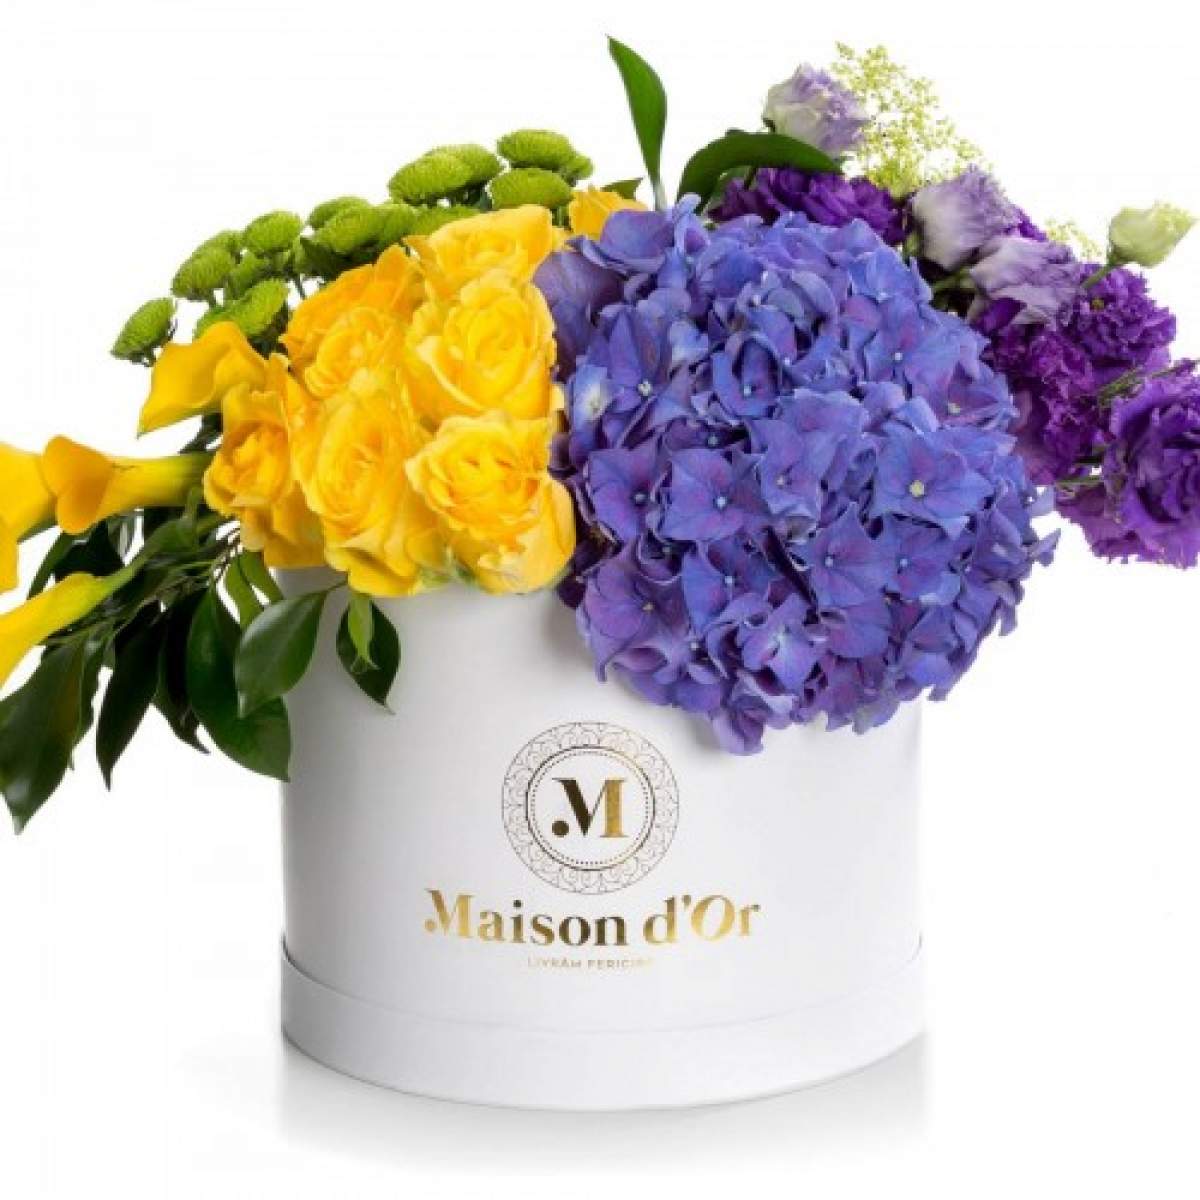 Cutiile cu flori pot reprezenta cadouri business de succes!